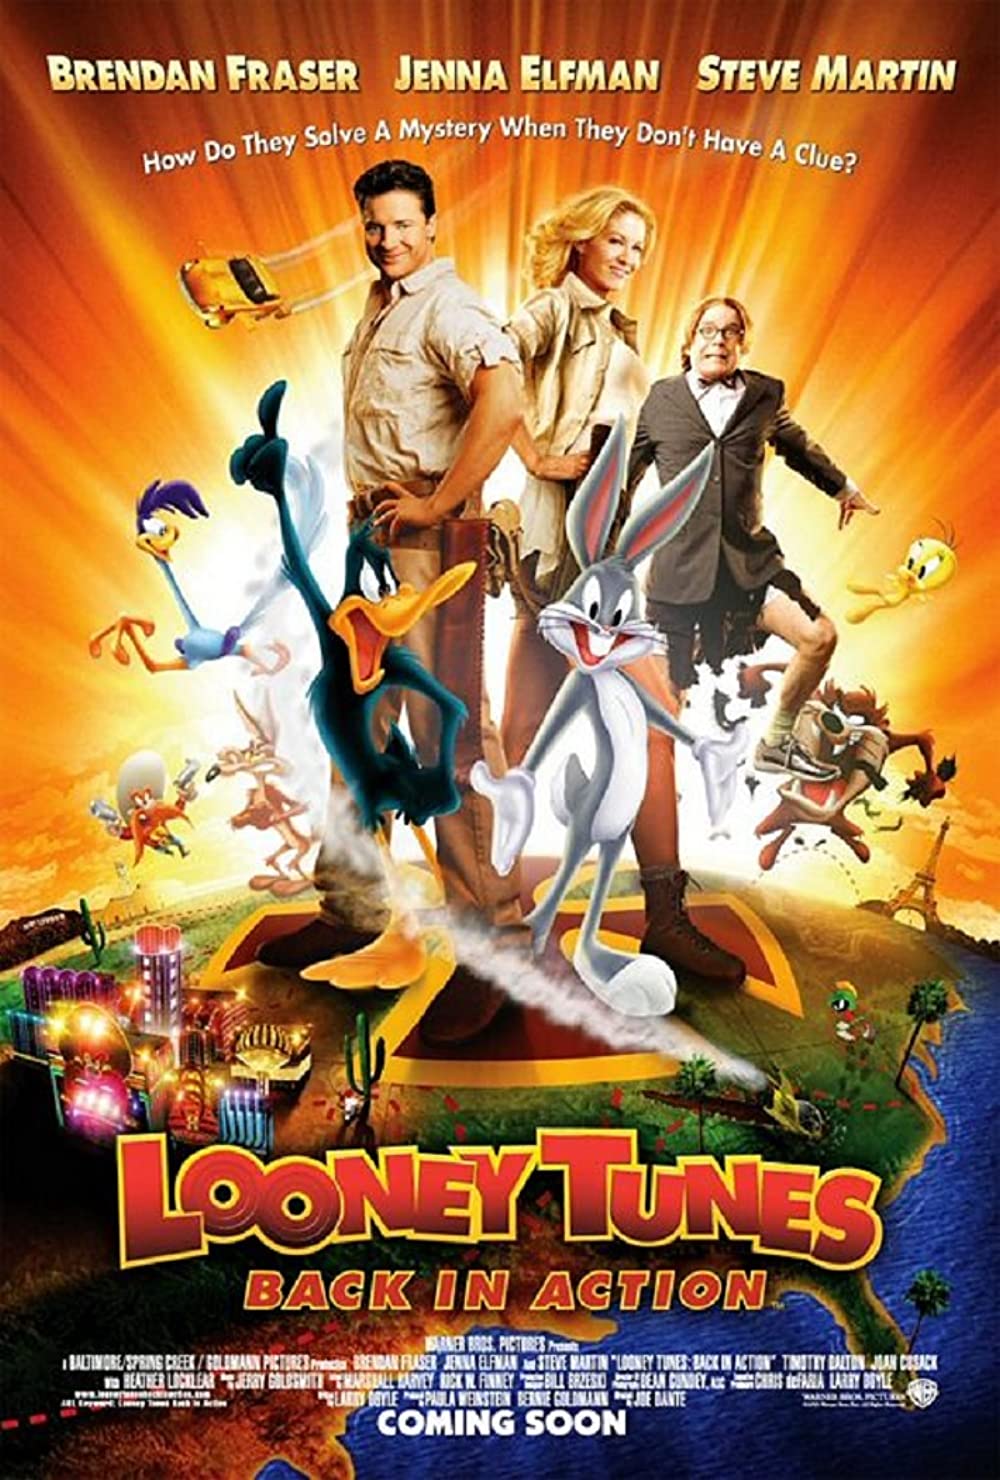 Filmbeschreibung zu Looney Tunes: Back in Action